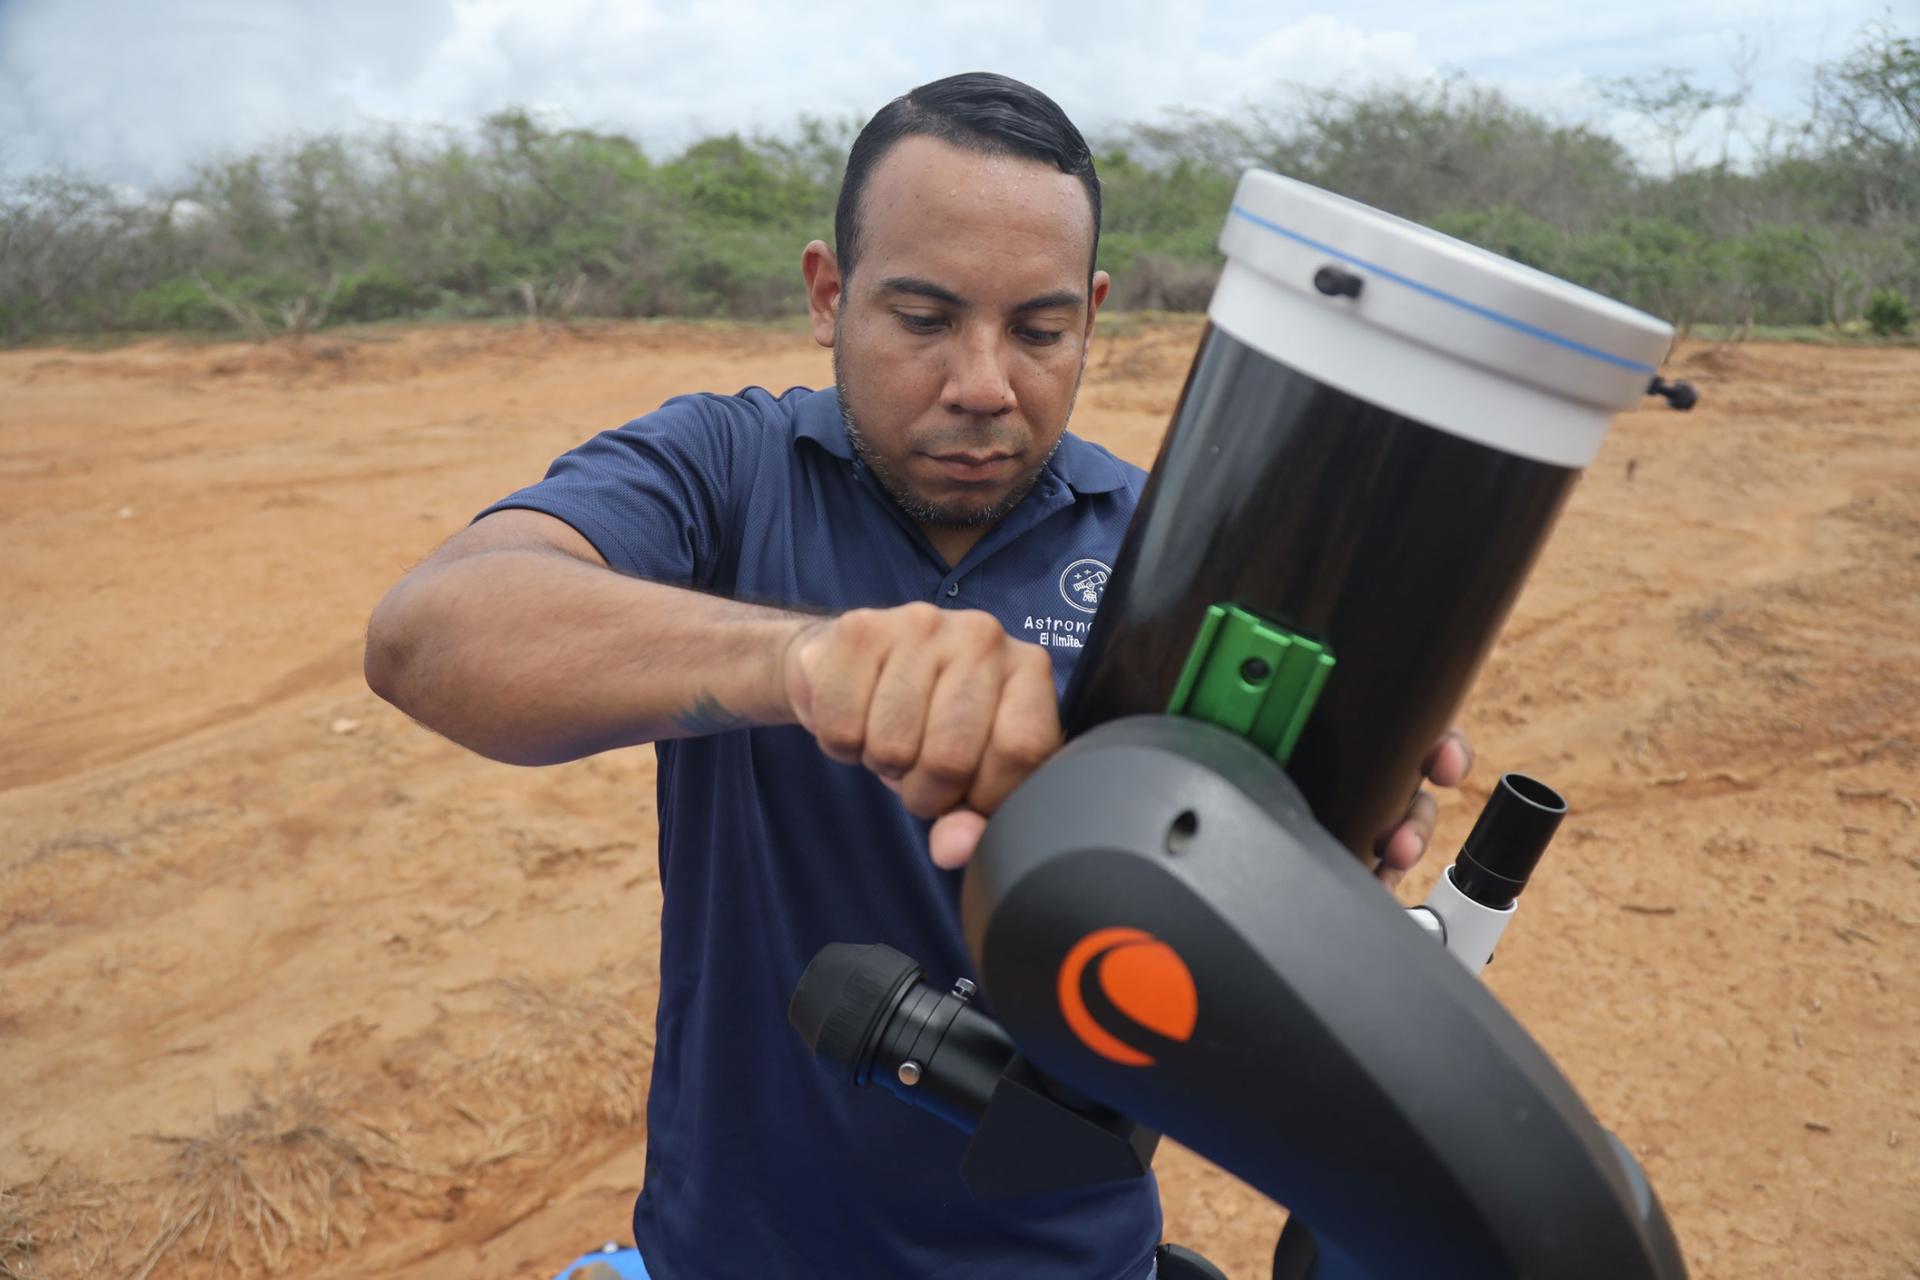 Gregory Guerrero adjusts the telescope.